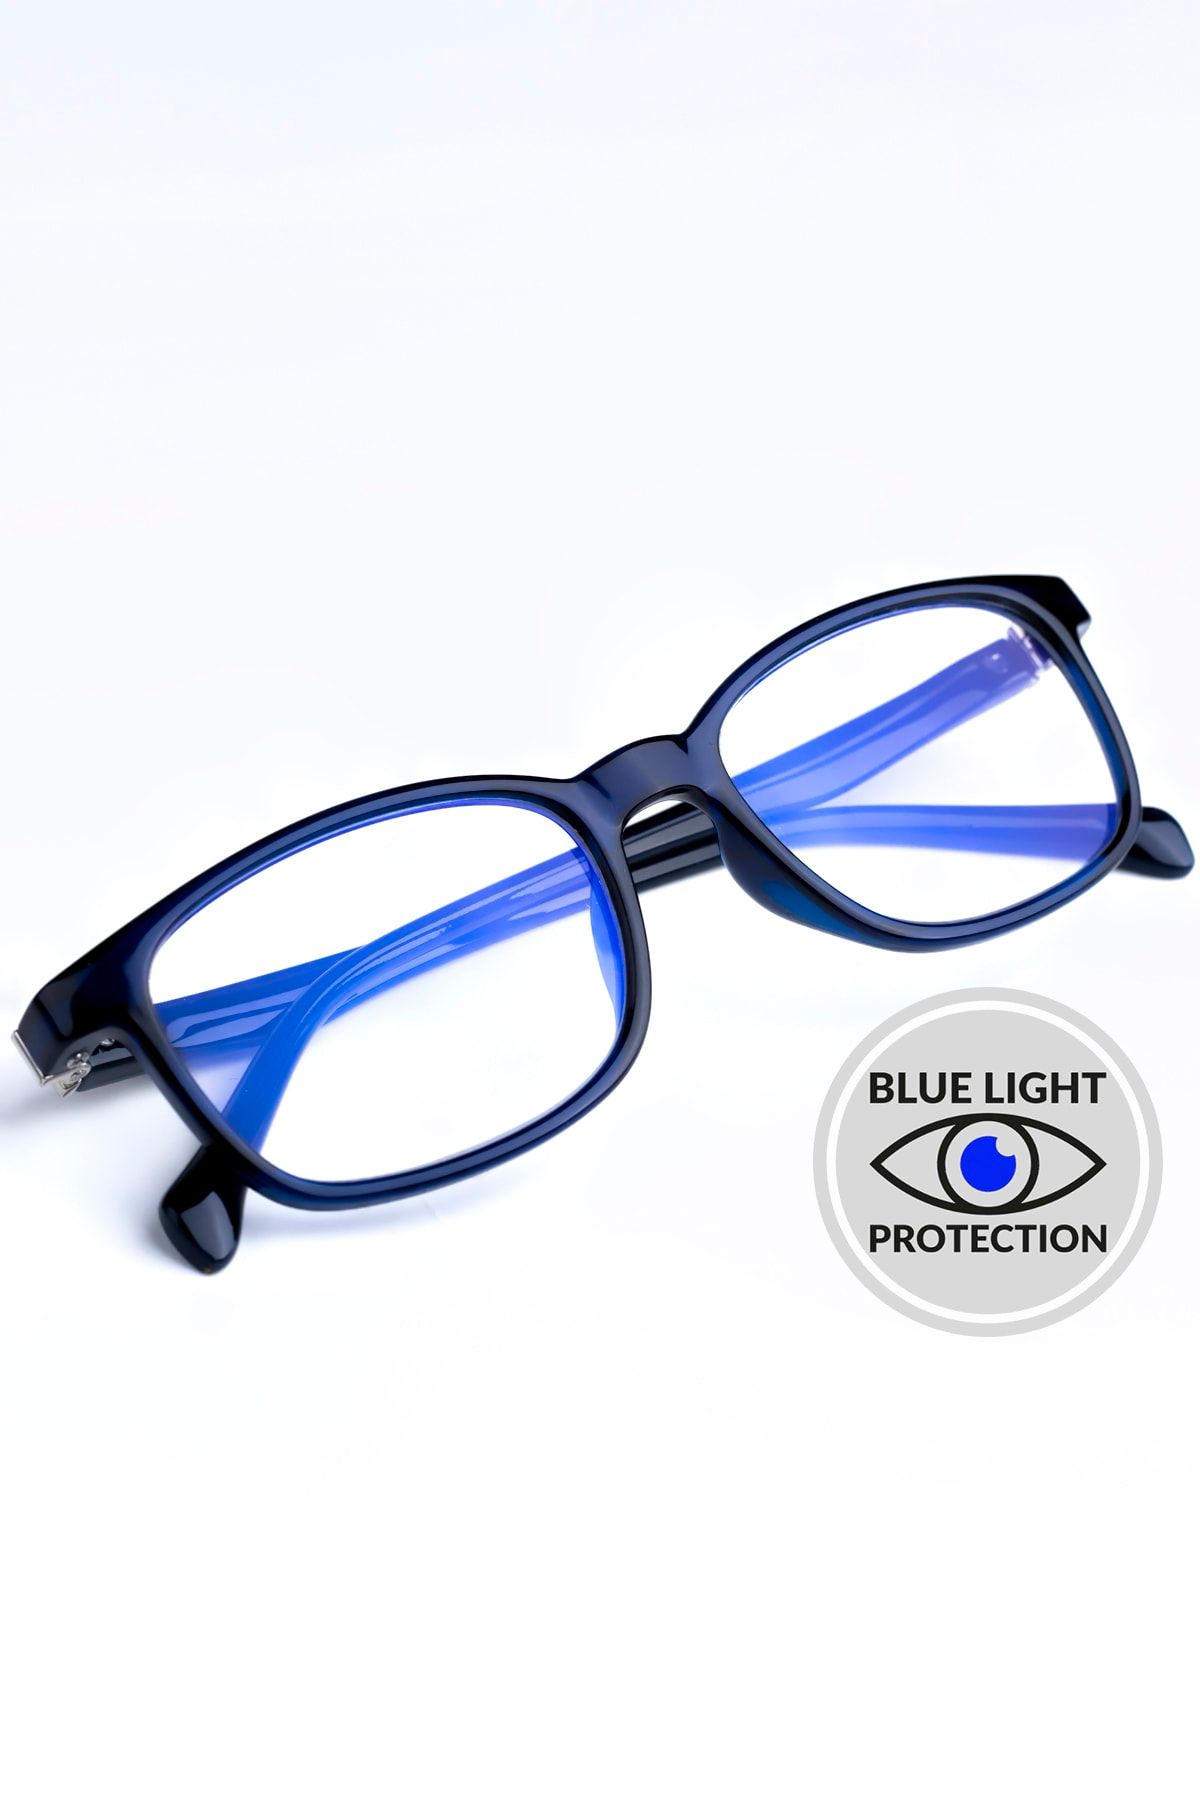 Focus On Lacivert 2-7 Yaş Mavi Işık Filtreli Çocuk Ekran Gözlüğü